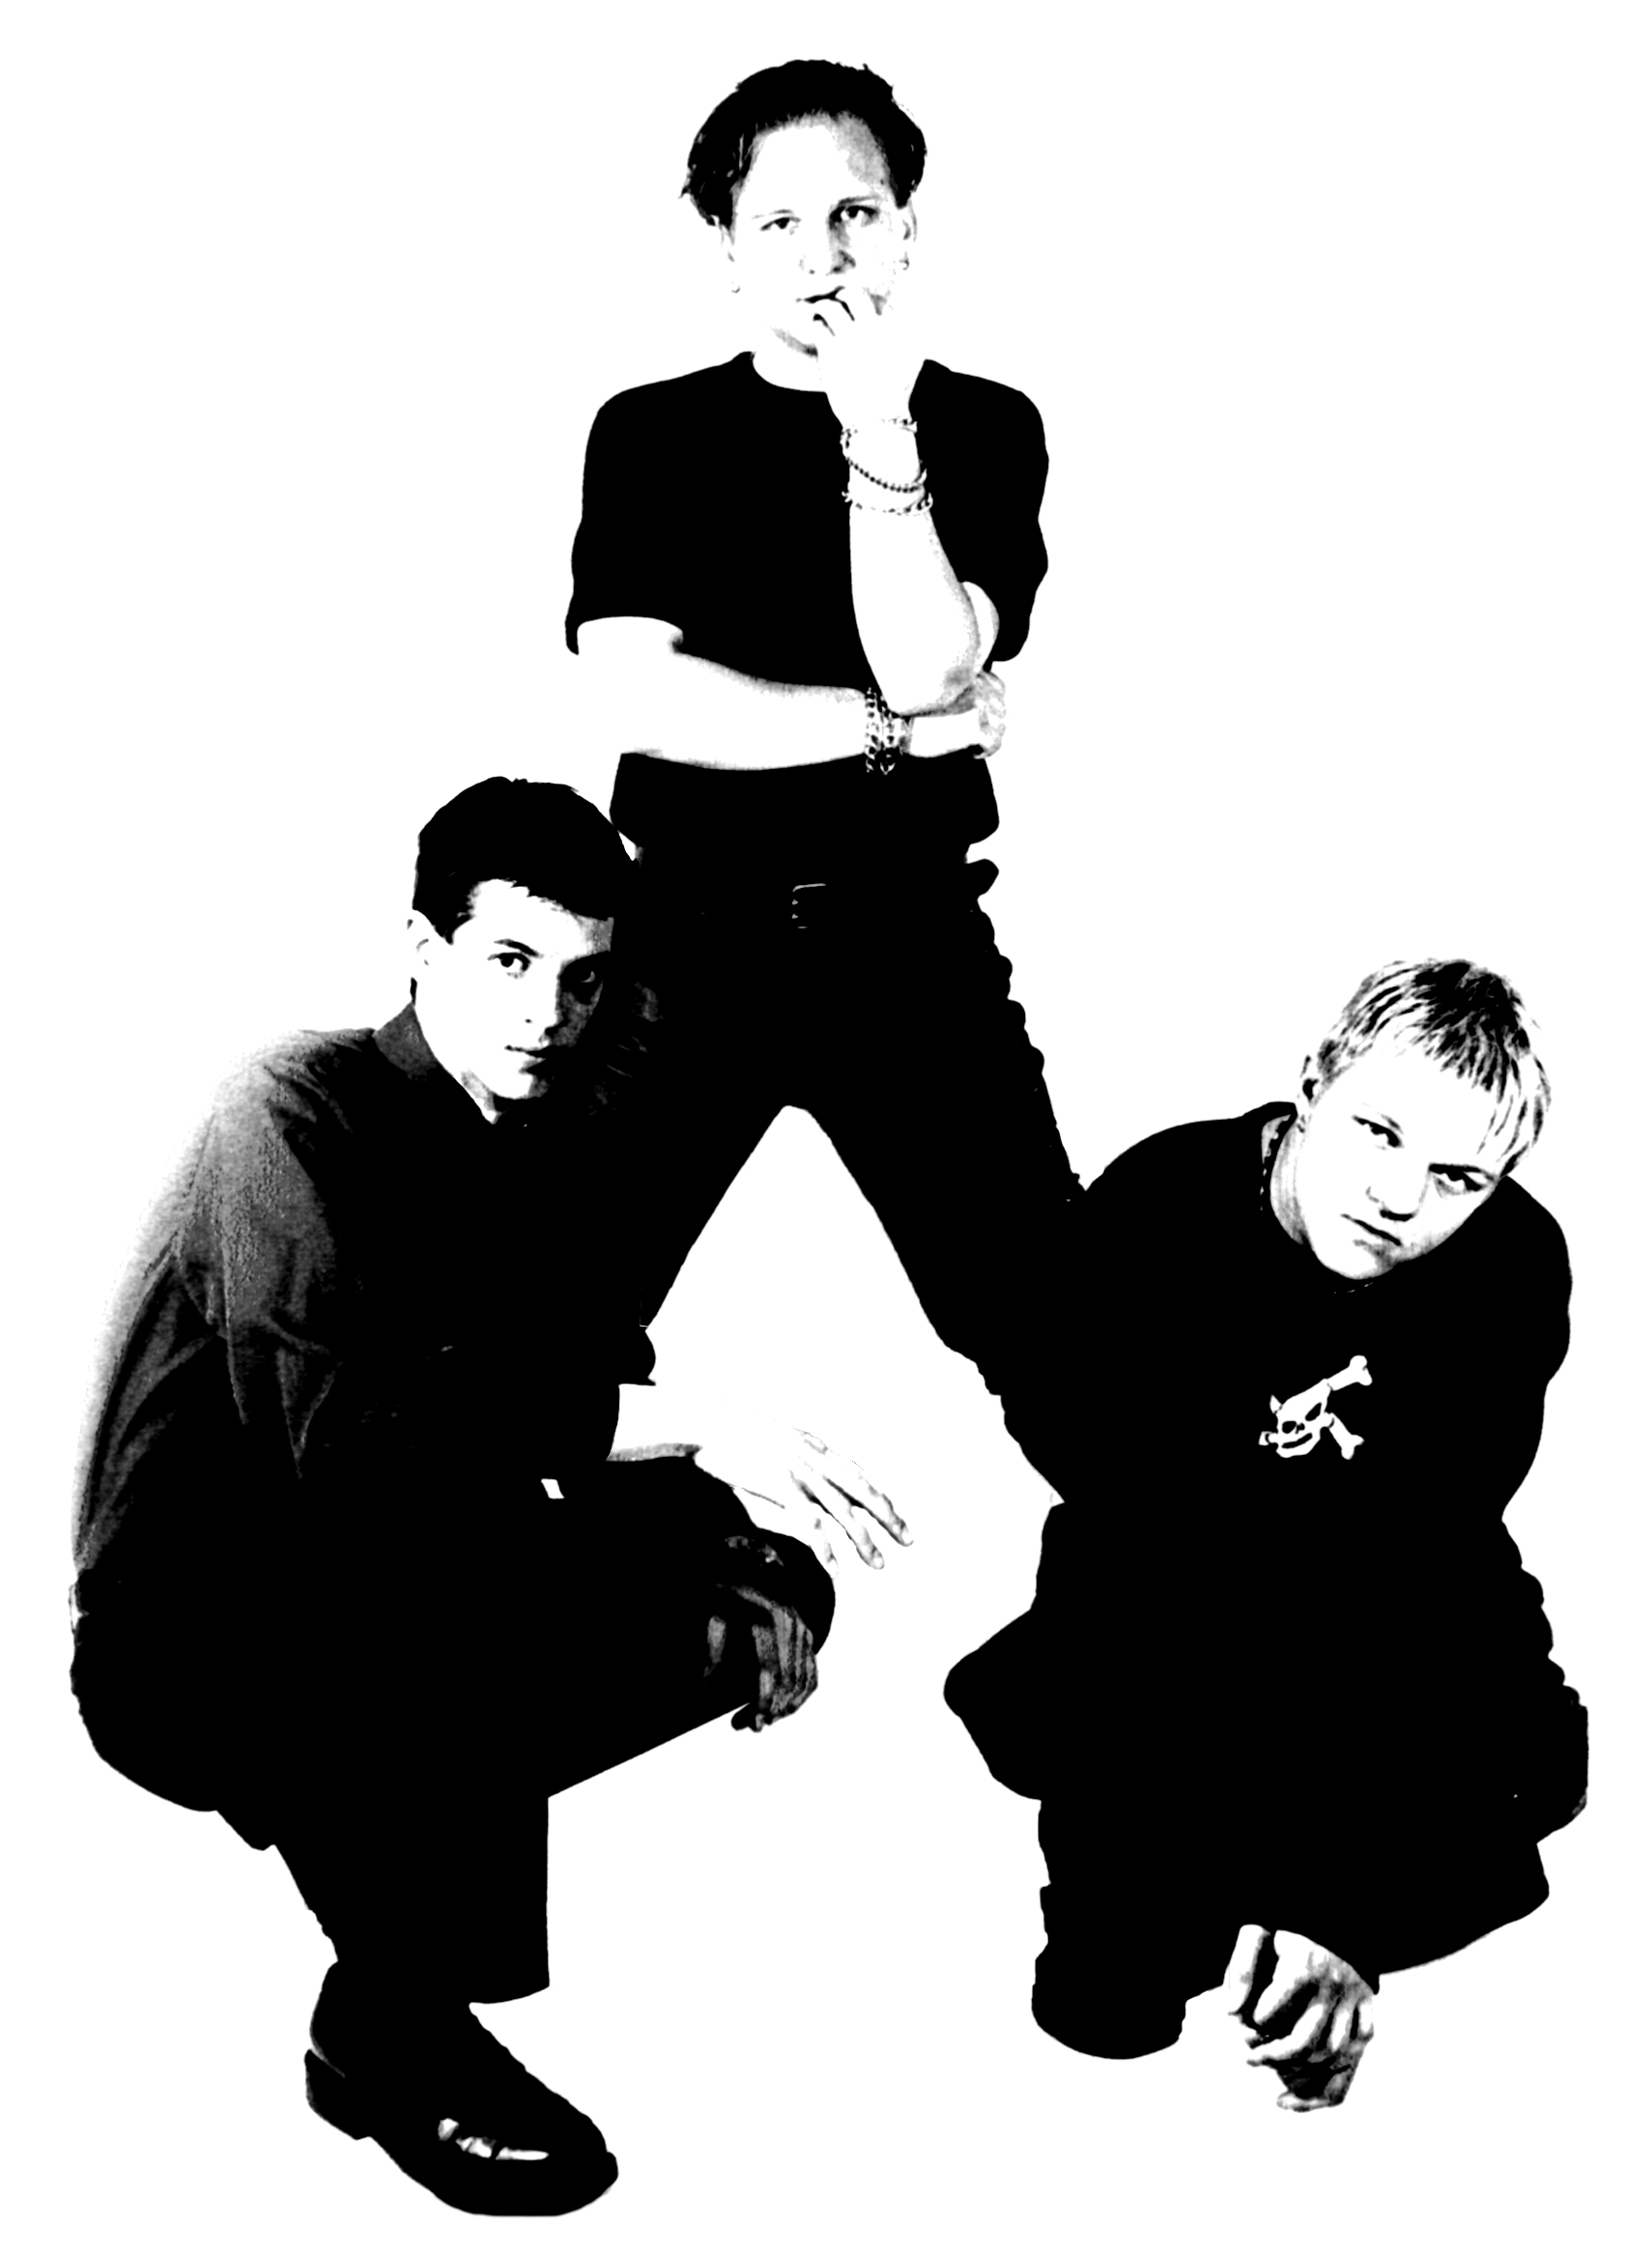 mrmoth group photo, circa 2000